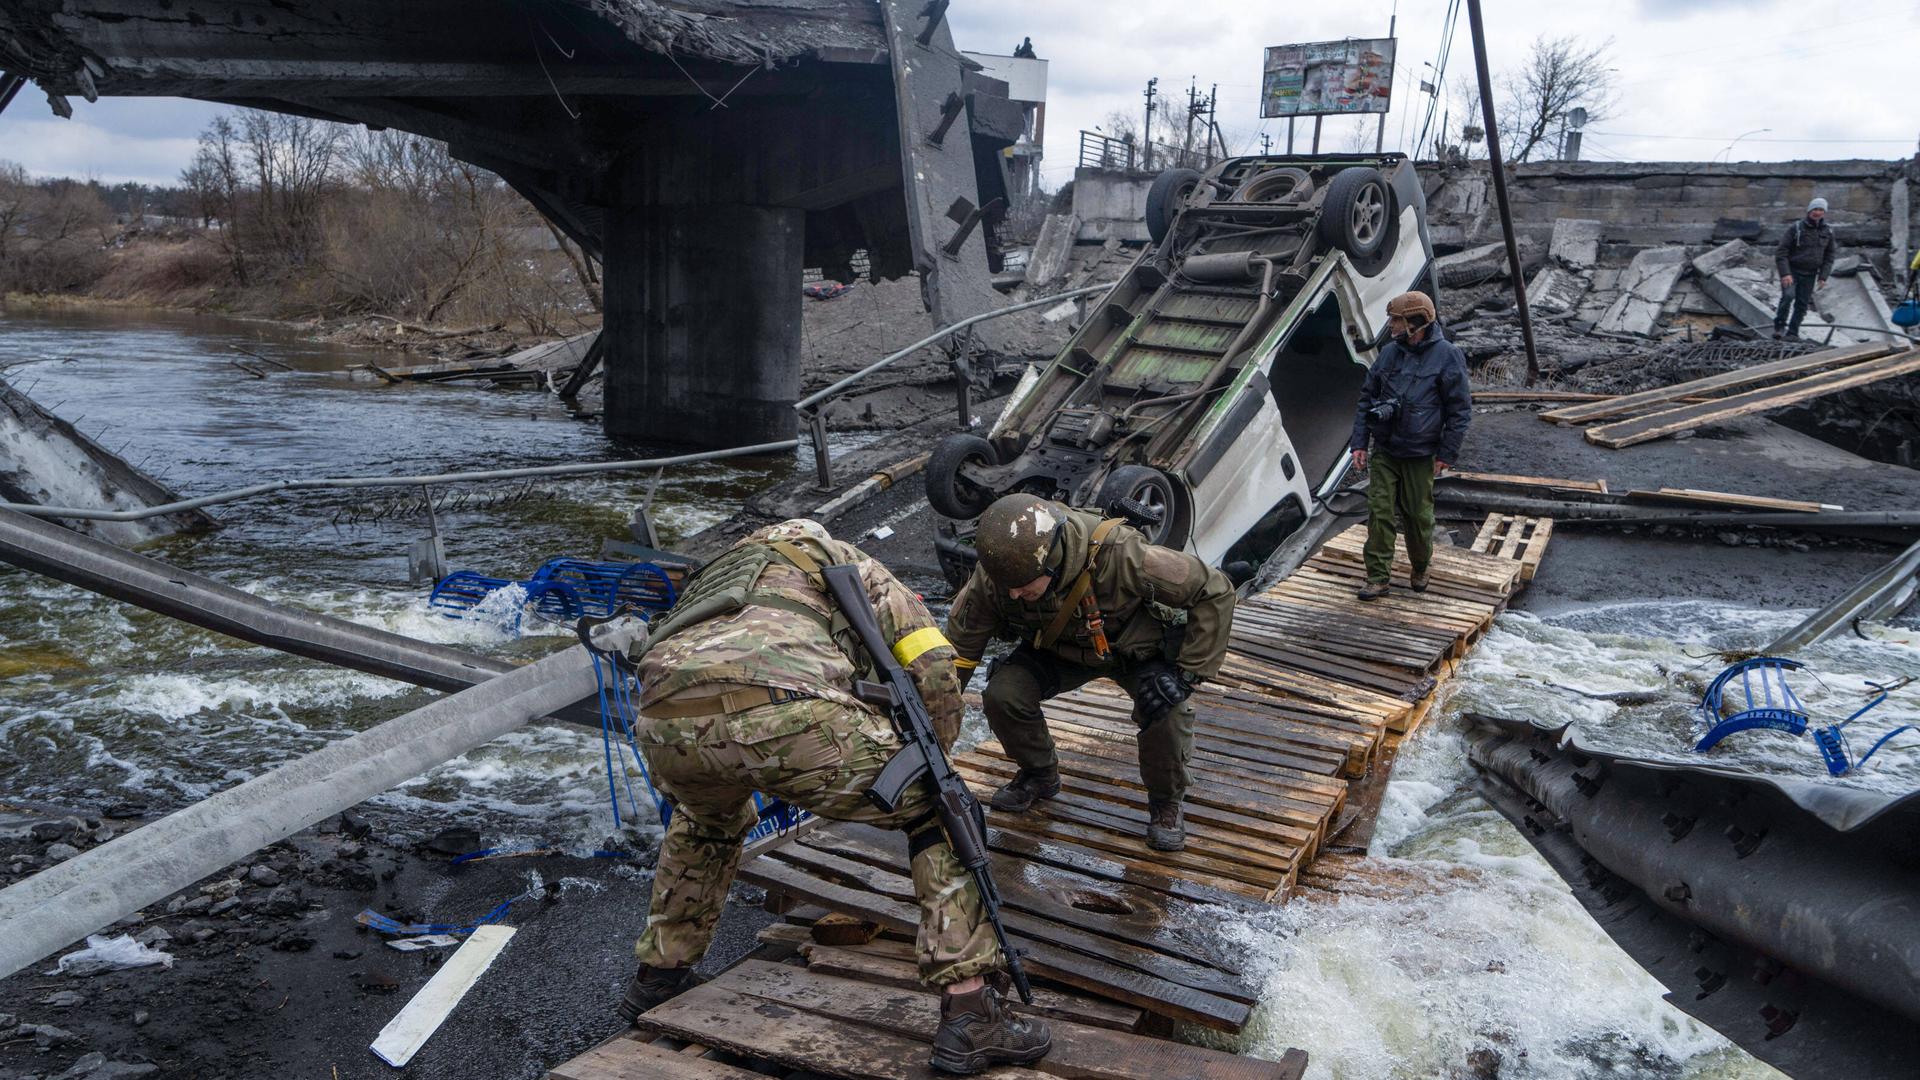 Ukrainische Soldaten richten einen Weg unter einer zerstörten Brücke in Irpin ein, um der Bevölkerung die Evakuierung von der Frontlinie zu ermöglichen.